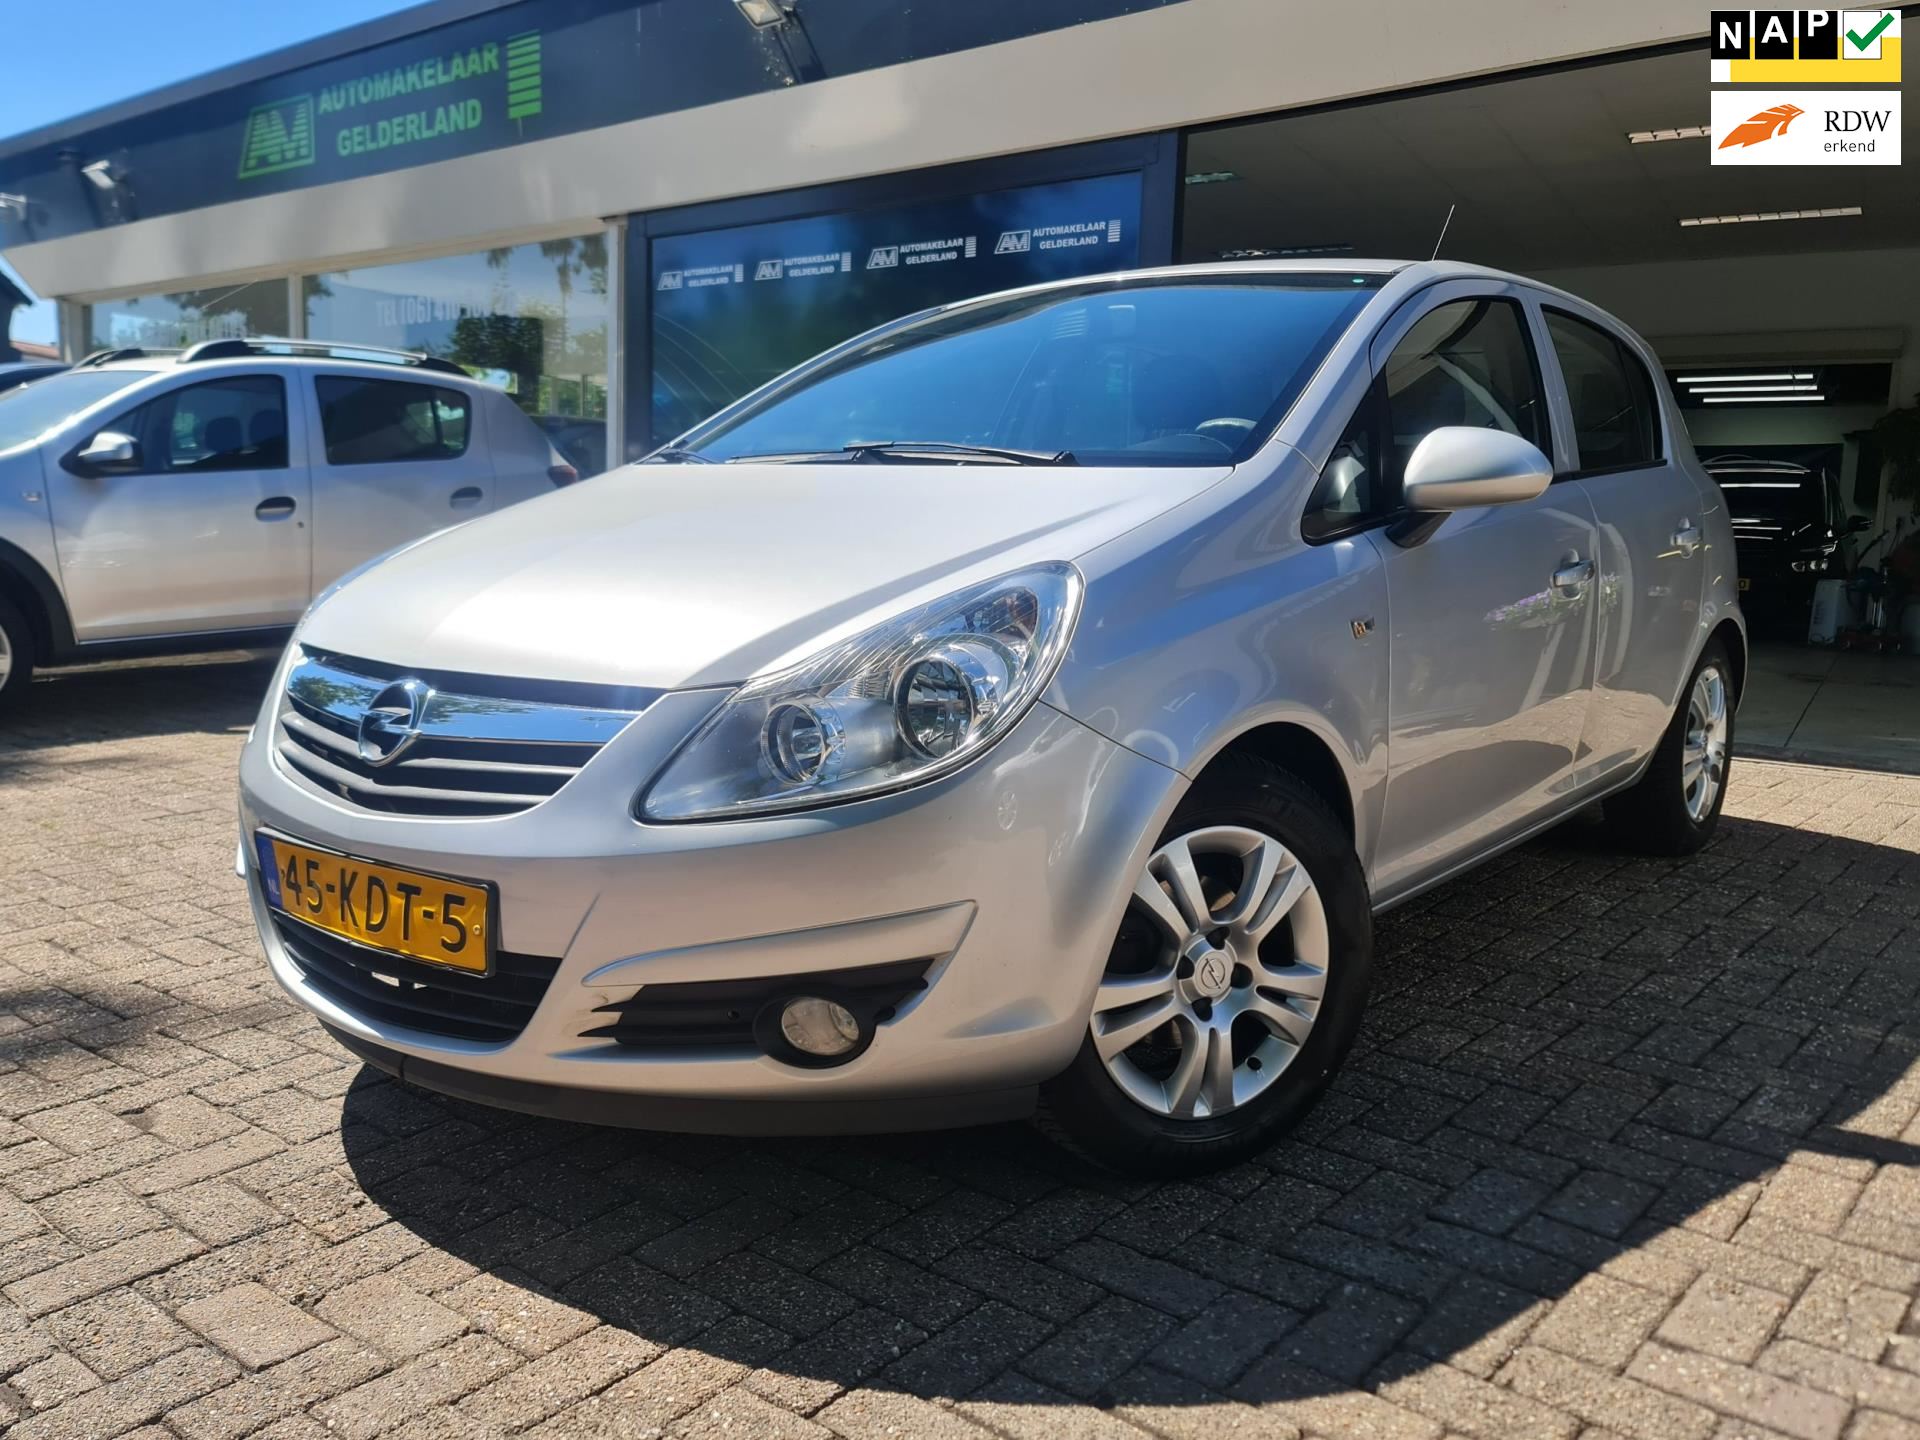 Opel Corsa occasion - De Automakelaar Gelderland